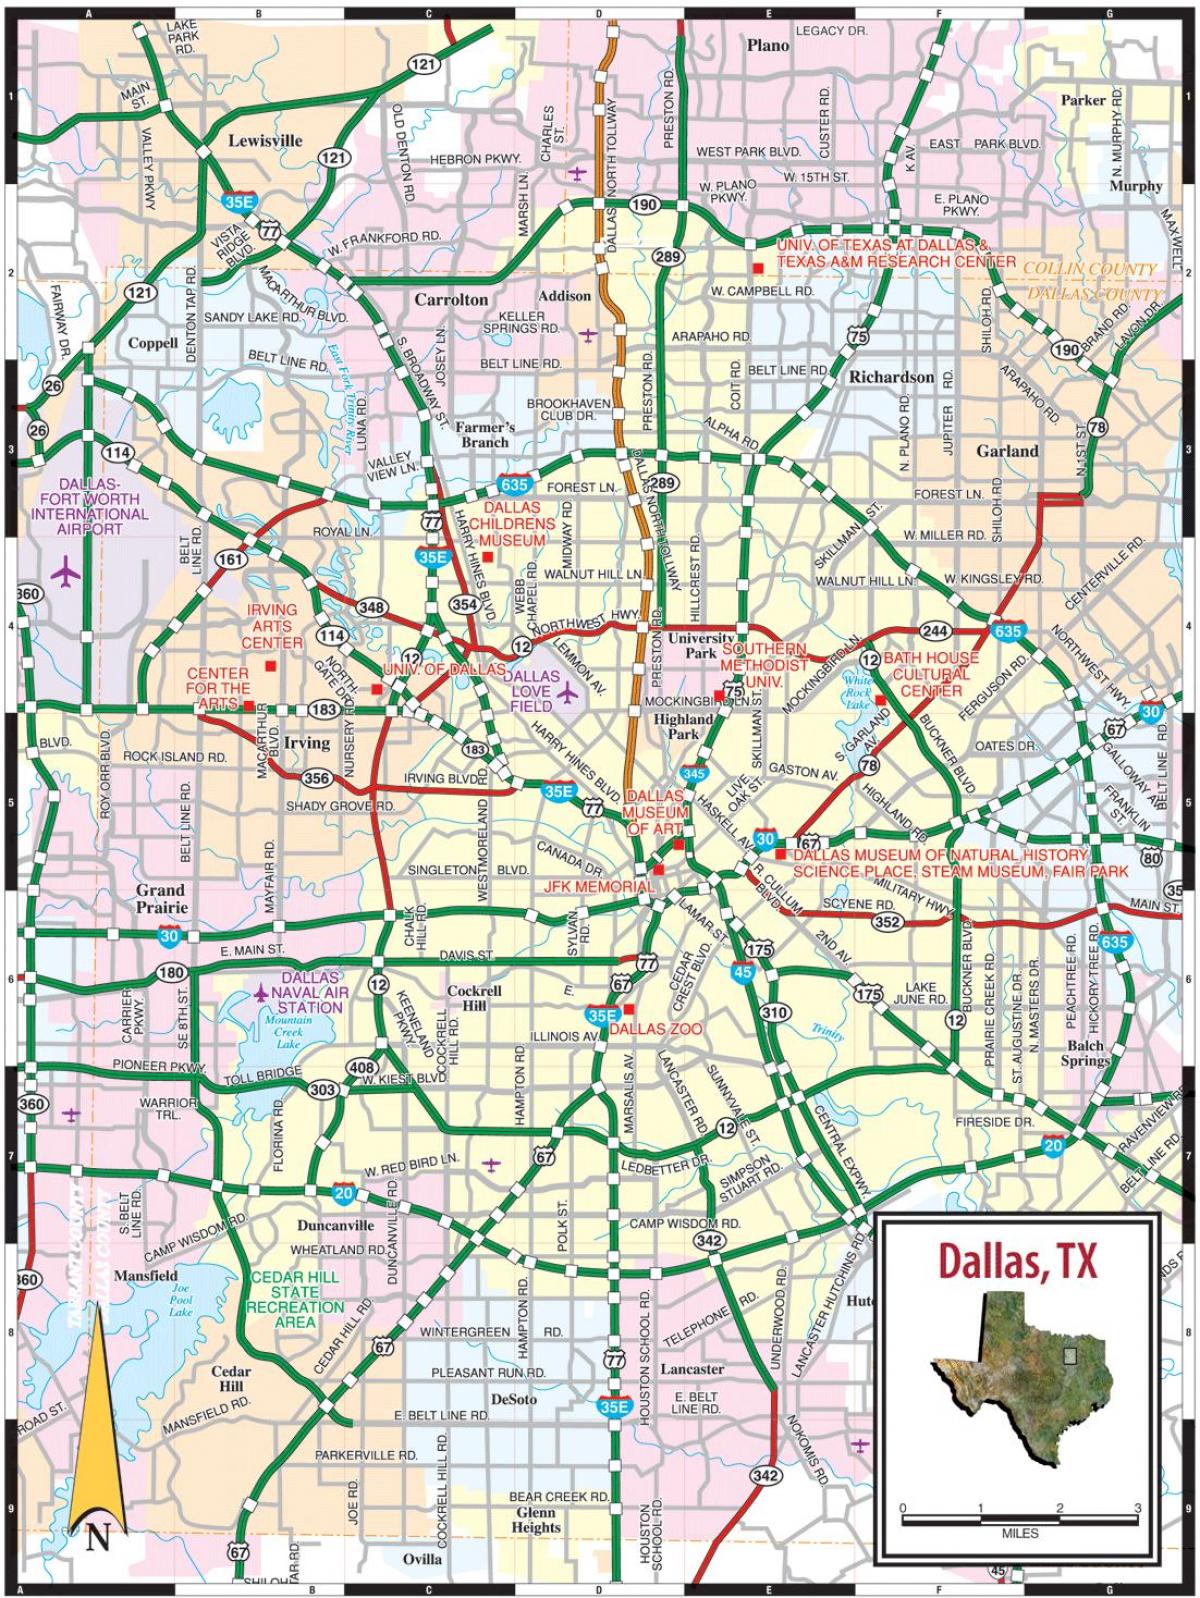 térkép Dallas tx